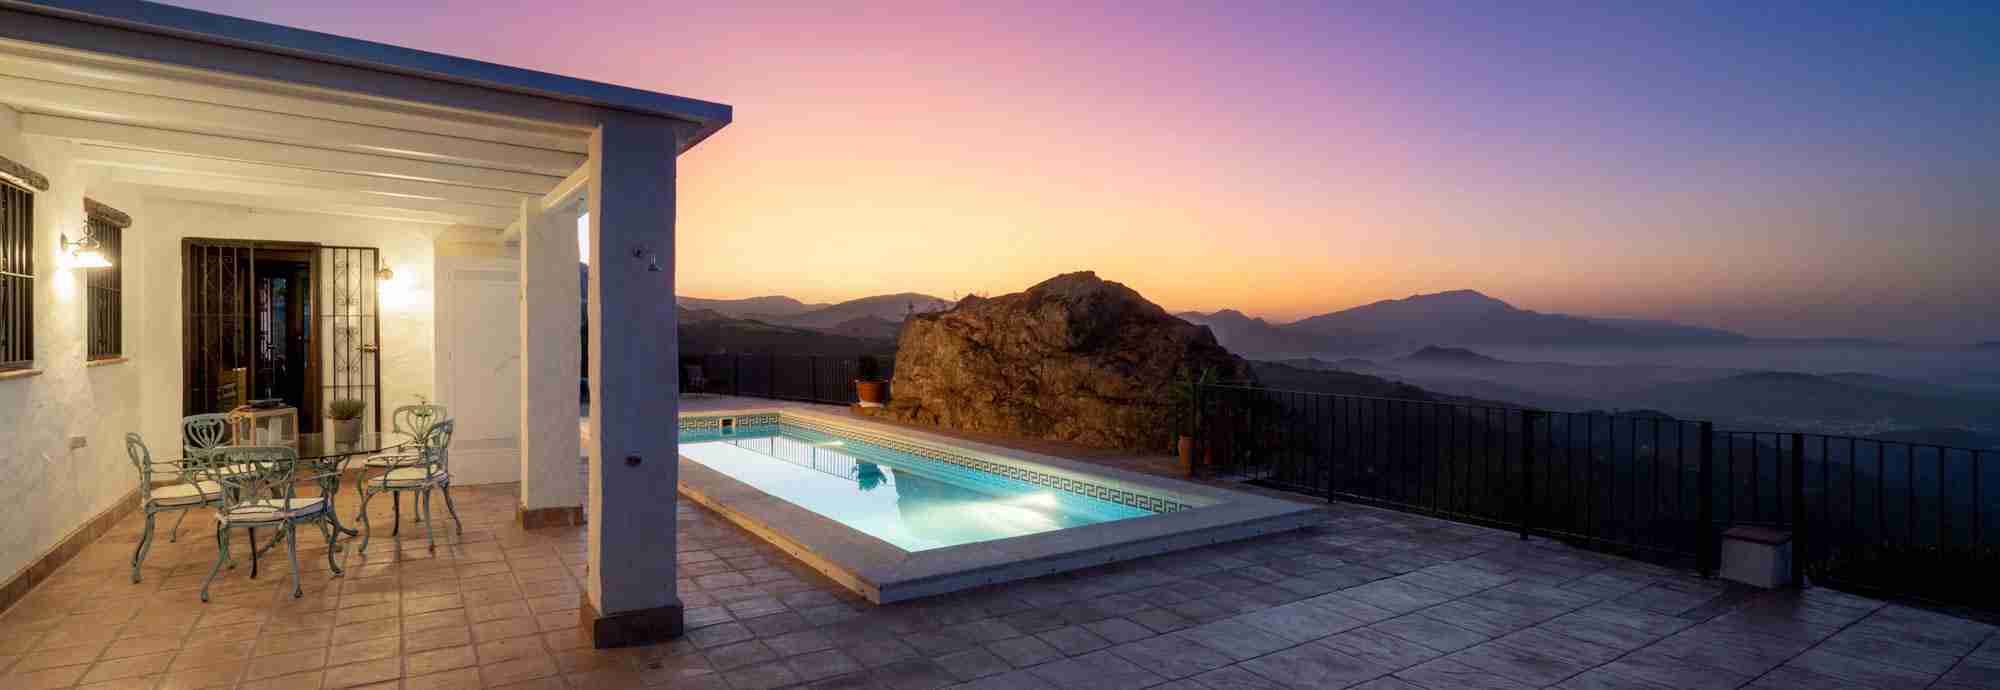 Villa tradicional ideal para vacaciones al aire libre y con vistas ininterrumpidas